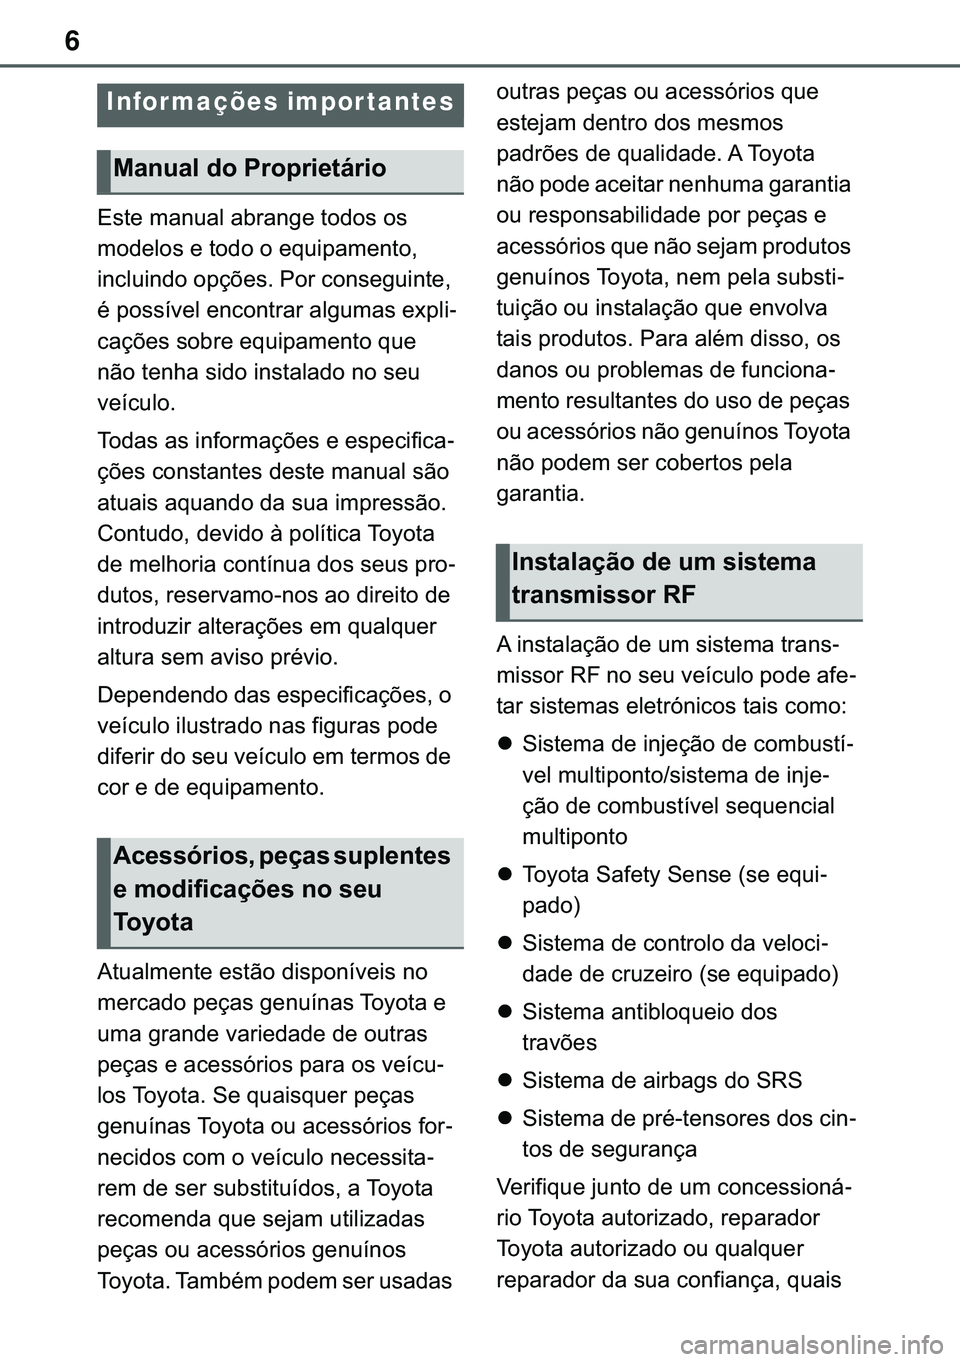 TOYOTA COROLLA HATCHBACK 2021  Manual de utilização (in Portuguese) 6
�(�V�W�H��P�D�Q�X�D�O��D�E�U�D�Q�J�H��W�R�G�R�V��R�V�
�P�R�G�H�O�R�V��H��W�R�G�R��R��H�T�X�L�S�D�P�H�Q�W�R��
�L�Q�F�O�X�L�Q�G�R��R�S�o�}�H�V���3�R�U��F�R�Q�V�H�J�X�L�Q�W�H��
�p��S�